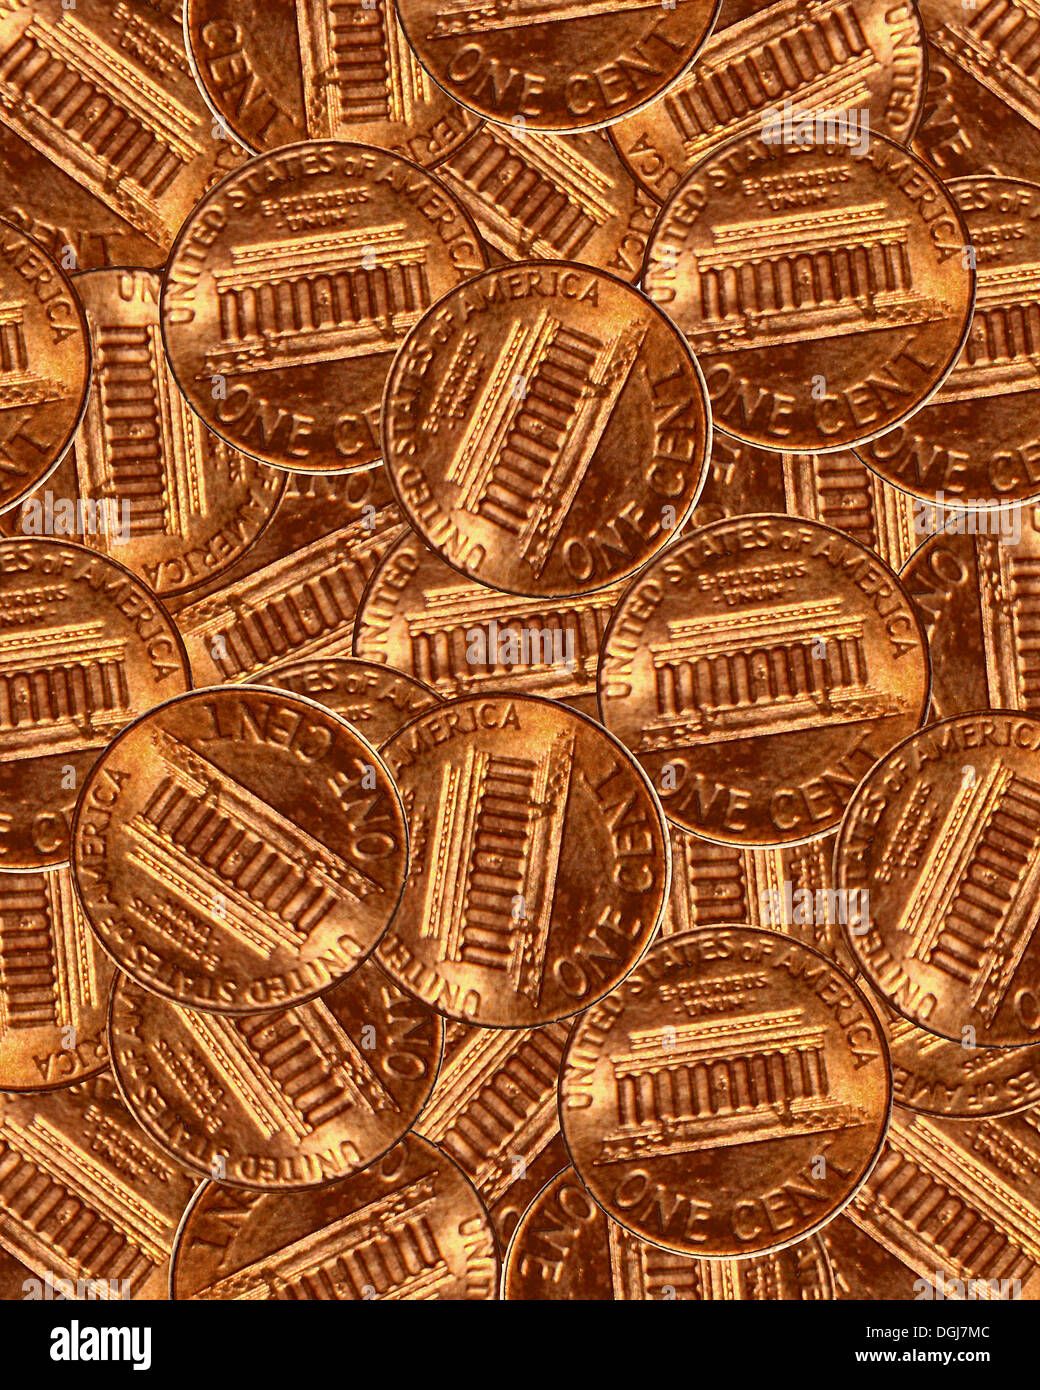 Un montón de monedas de un centavo estadounidense. Foto de stock